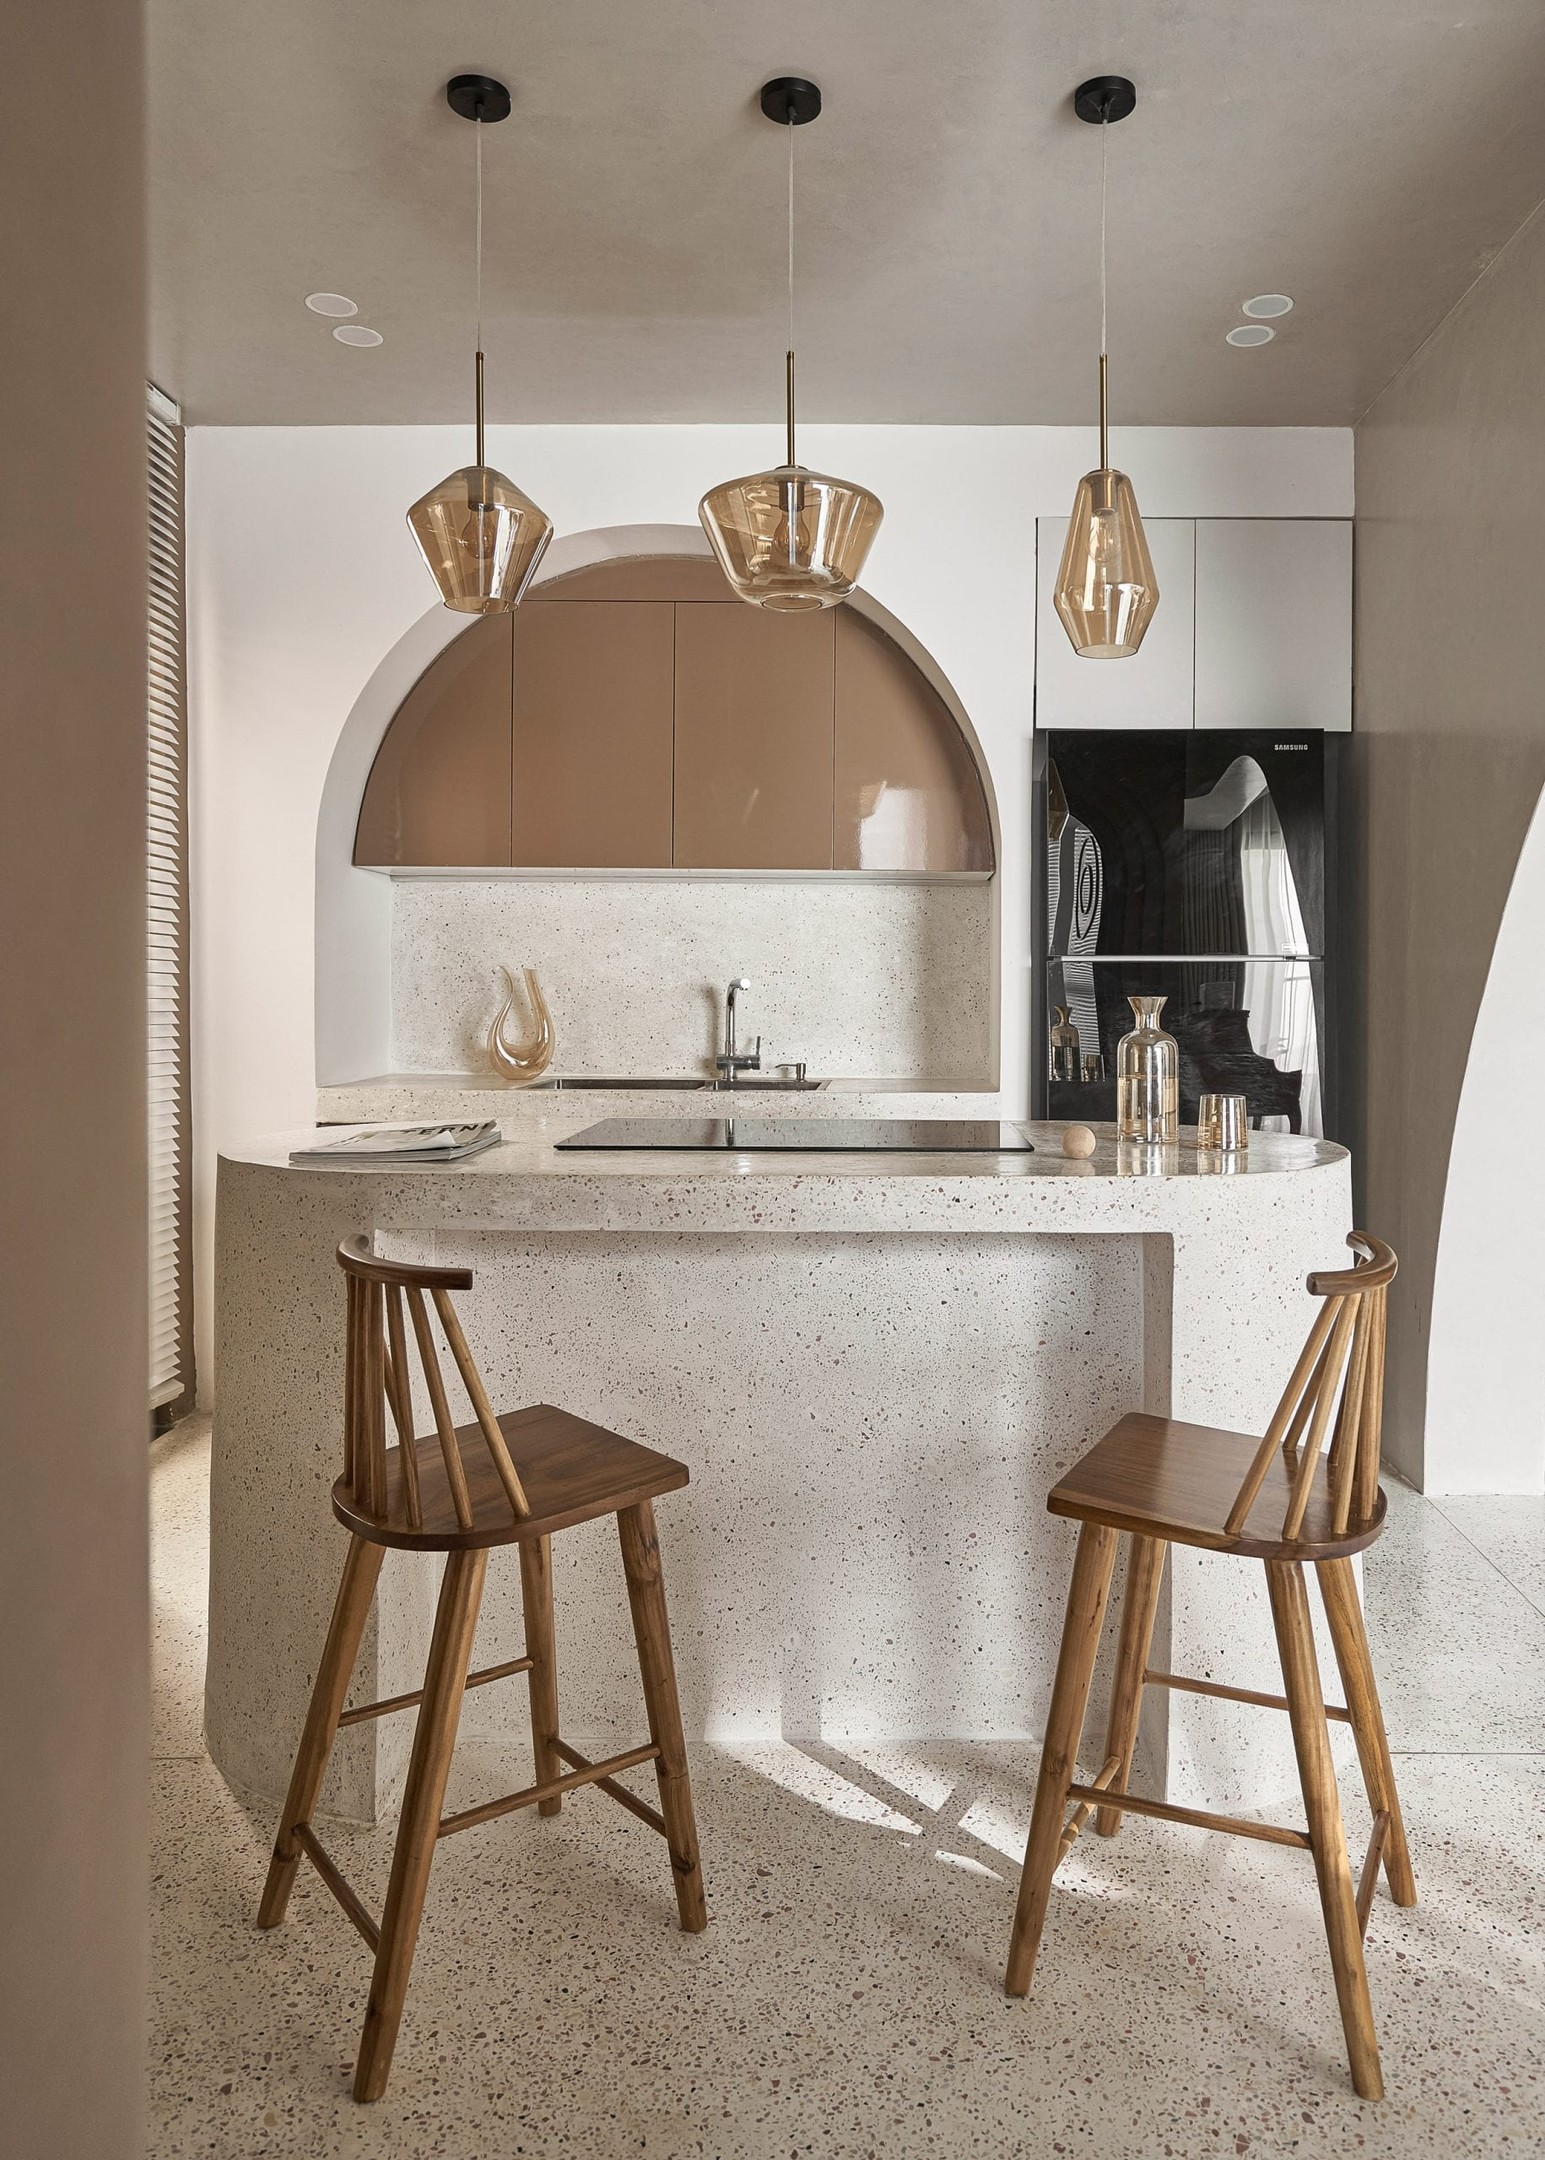 Tủ bếp màu nâu với mái vòm cong duyên dáng trên nền tường trắng. Họa tiết Terrazzo xuất hiện ở mọi nơi. Đối diện là đảo bếp, sử dụng như bàn ăn tiện lợi với bộ đèn thả trần sang chảnh.